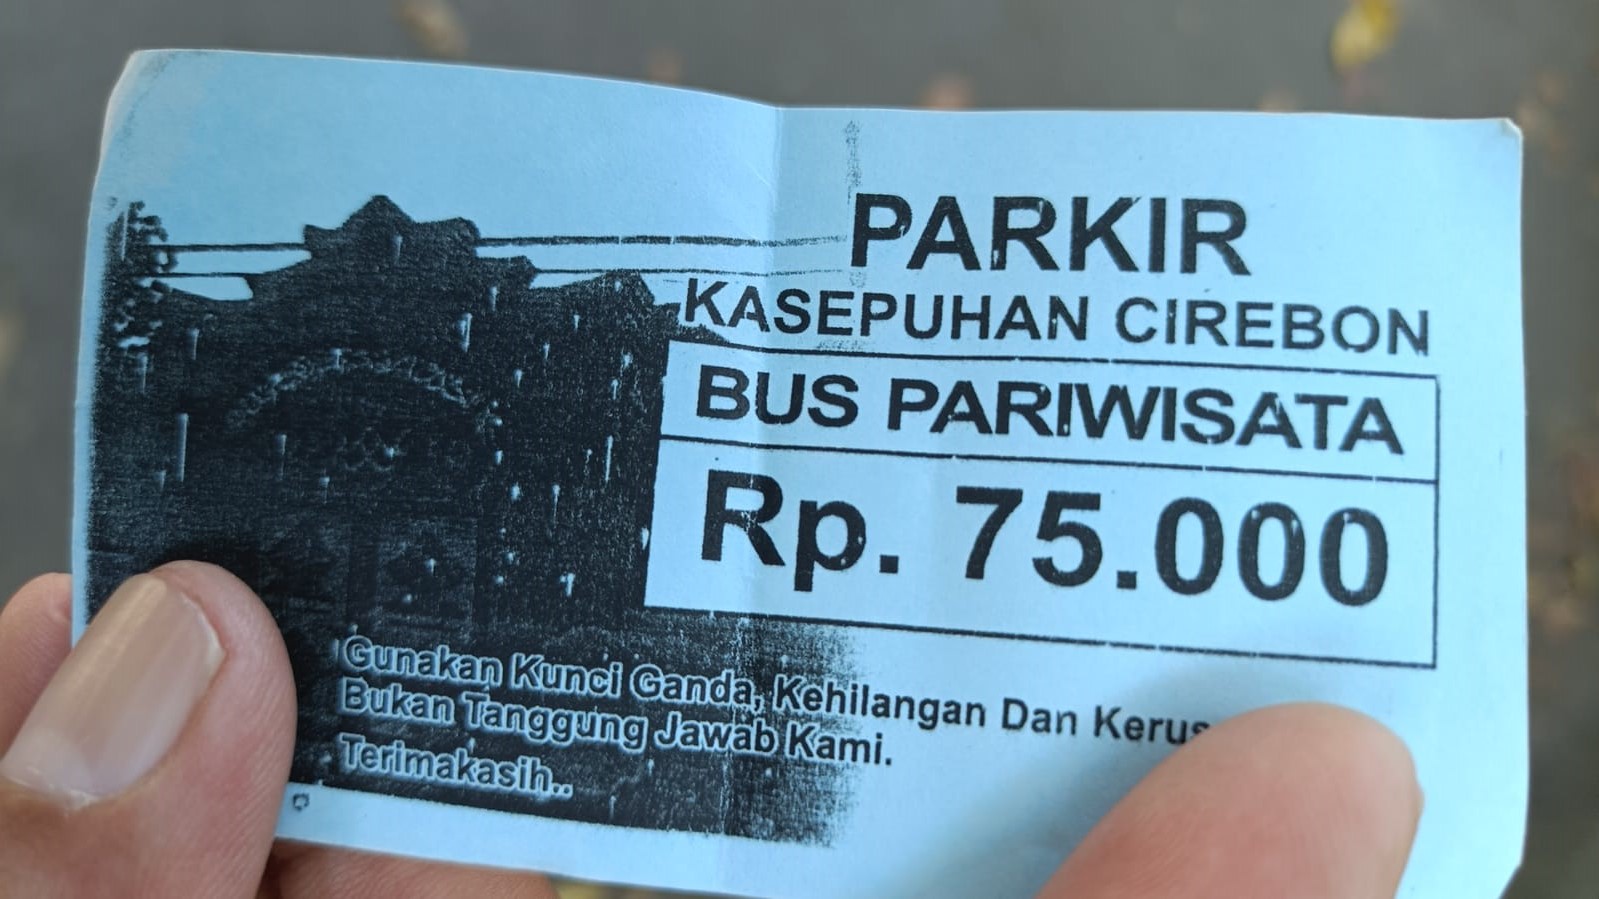 NGERI! Beredar Tiket Parkir Kasepuhan Cirebon Rp 75.000 untuk Bus Pariwisata